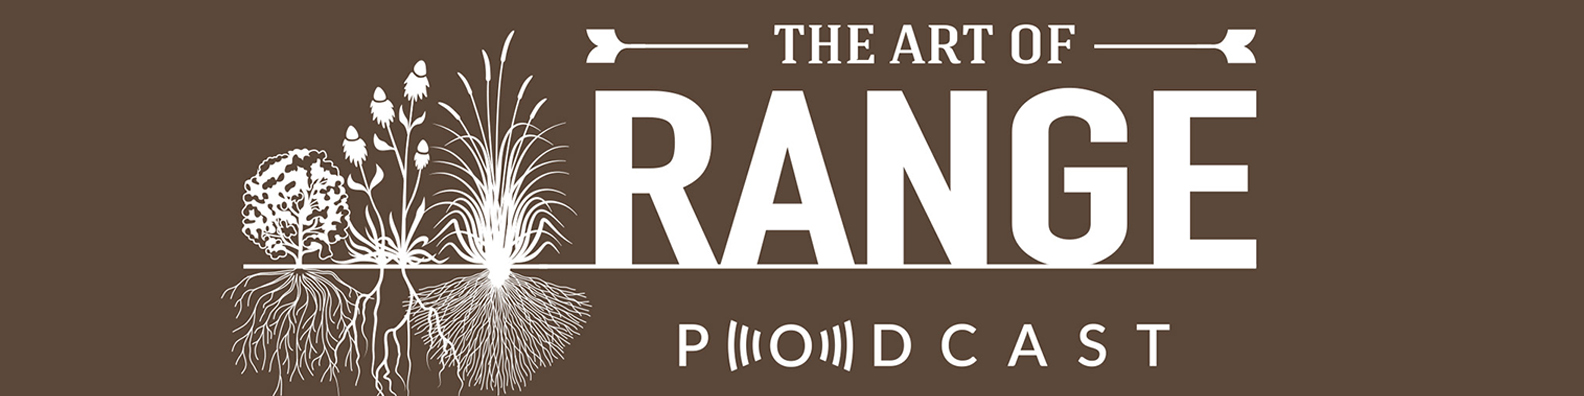 Art of Range | Home